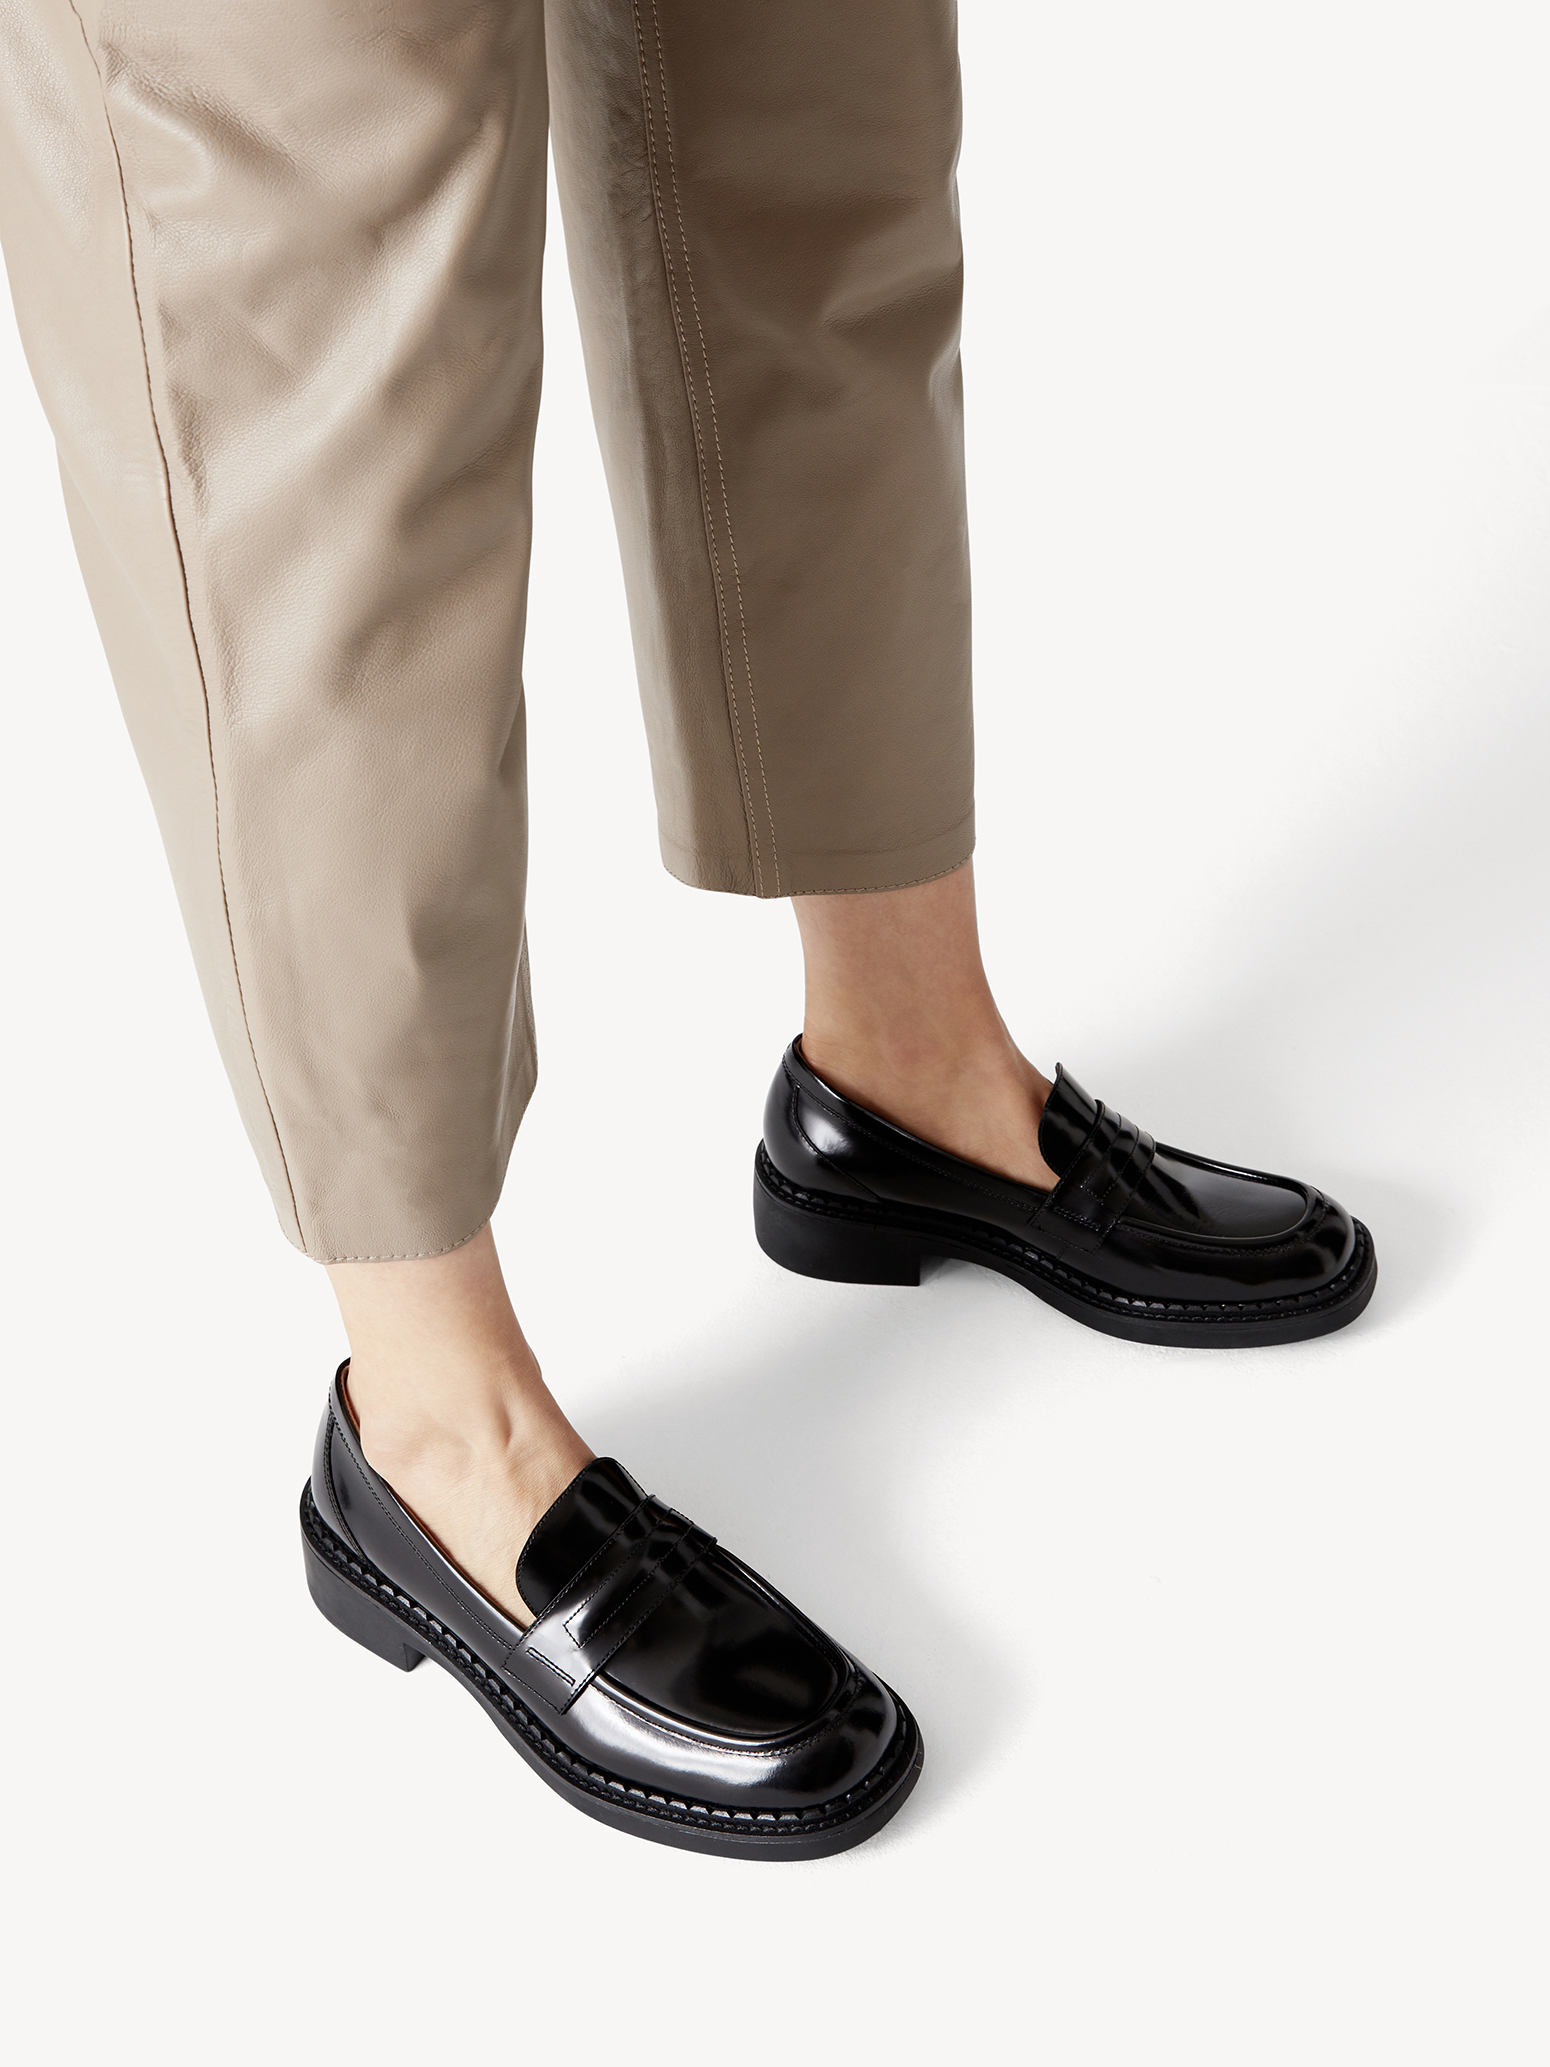 Туфли женские (черный) - изображение №1